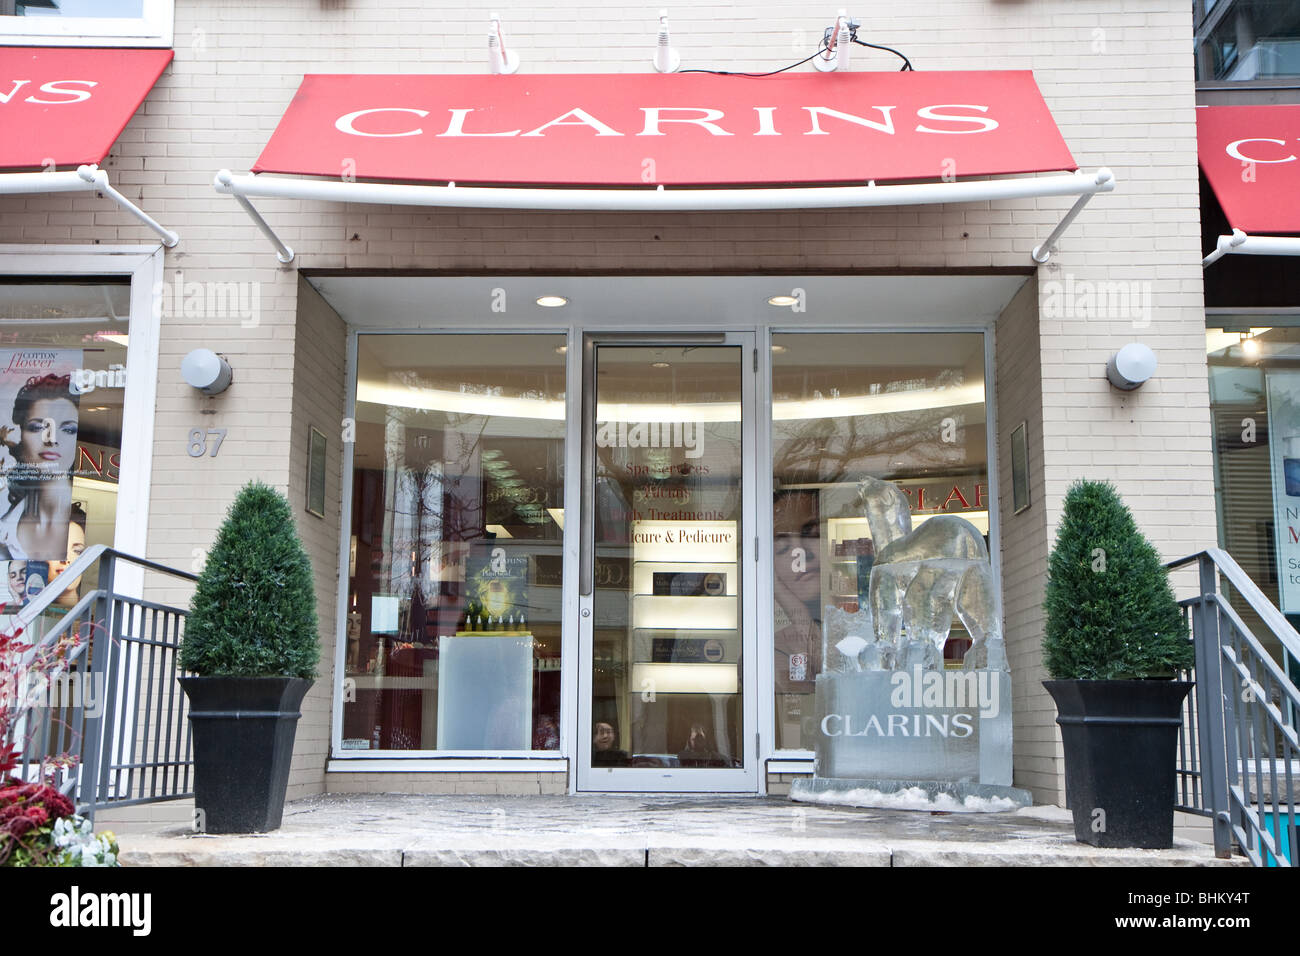 Vue grand angle de l'avant avec un magasin Clarins sculpture de glace assis sur le côté Banque D'Images